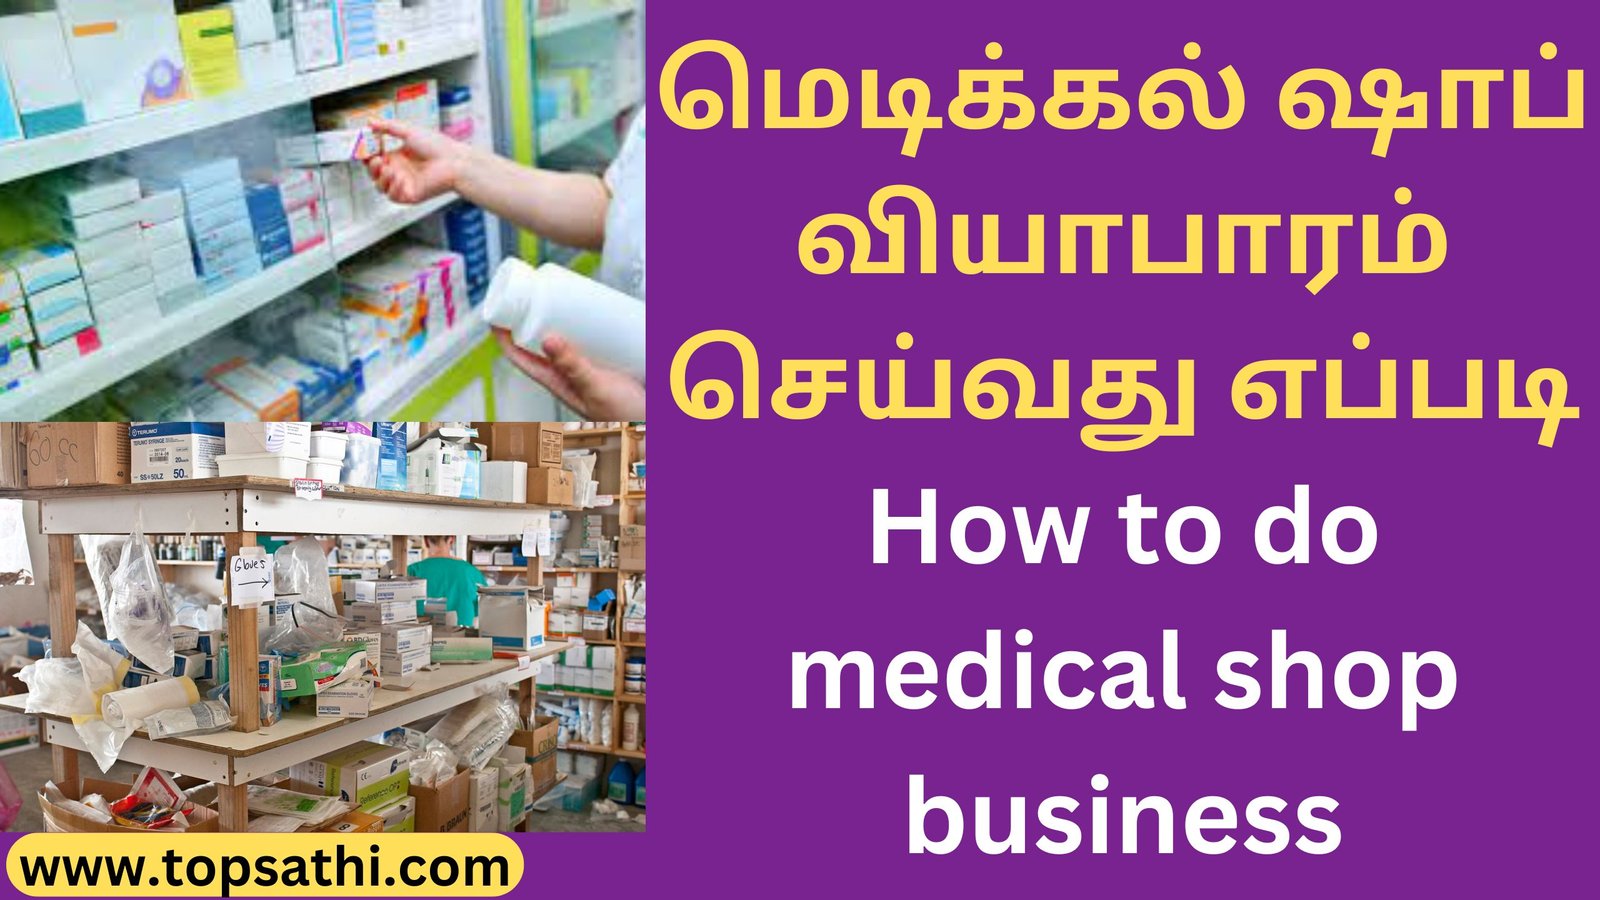 மெடிக்கல் ஷாப் வியாபாரம் செய்வது எப்படி How to do medical shop business